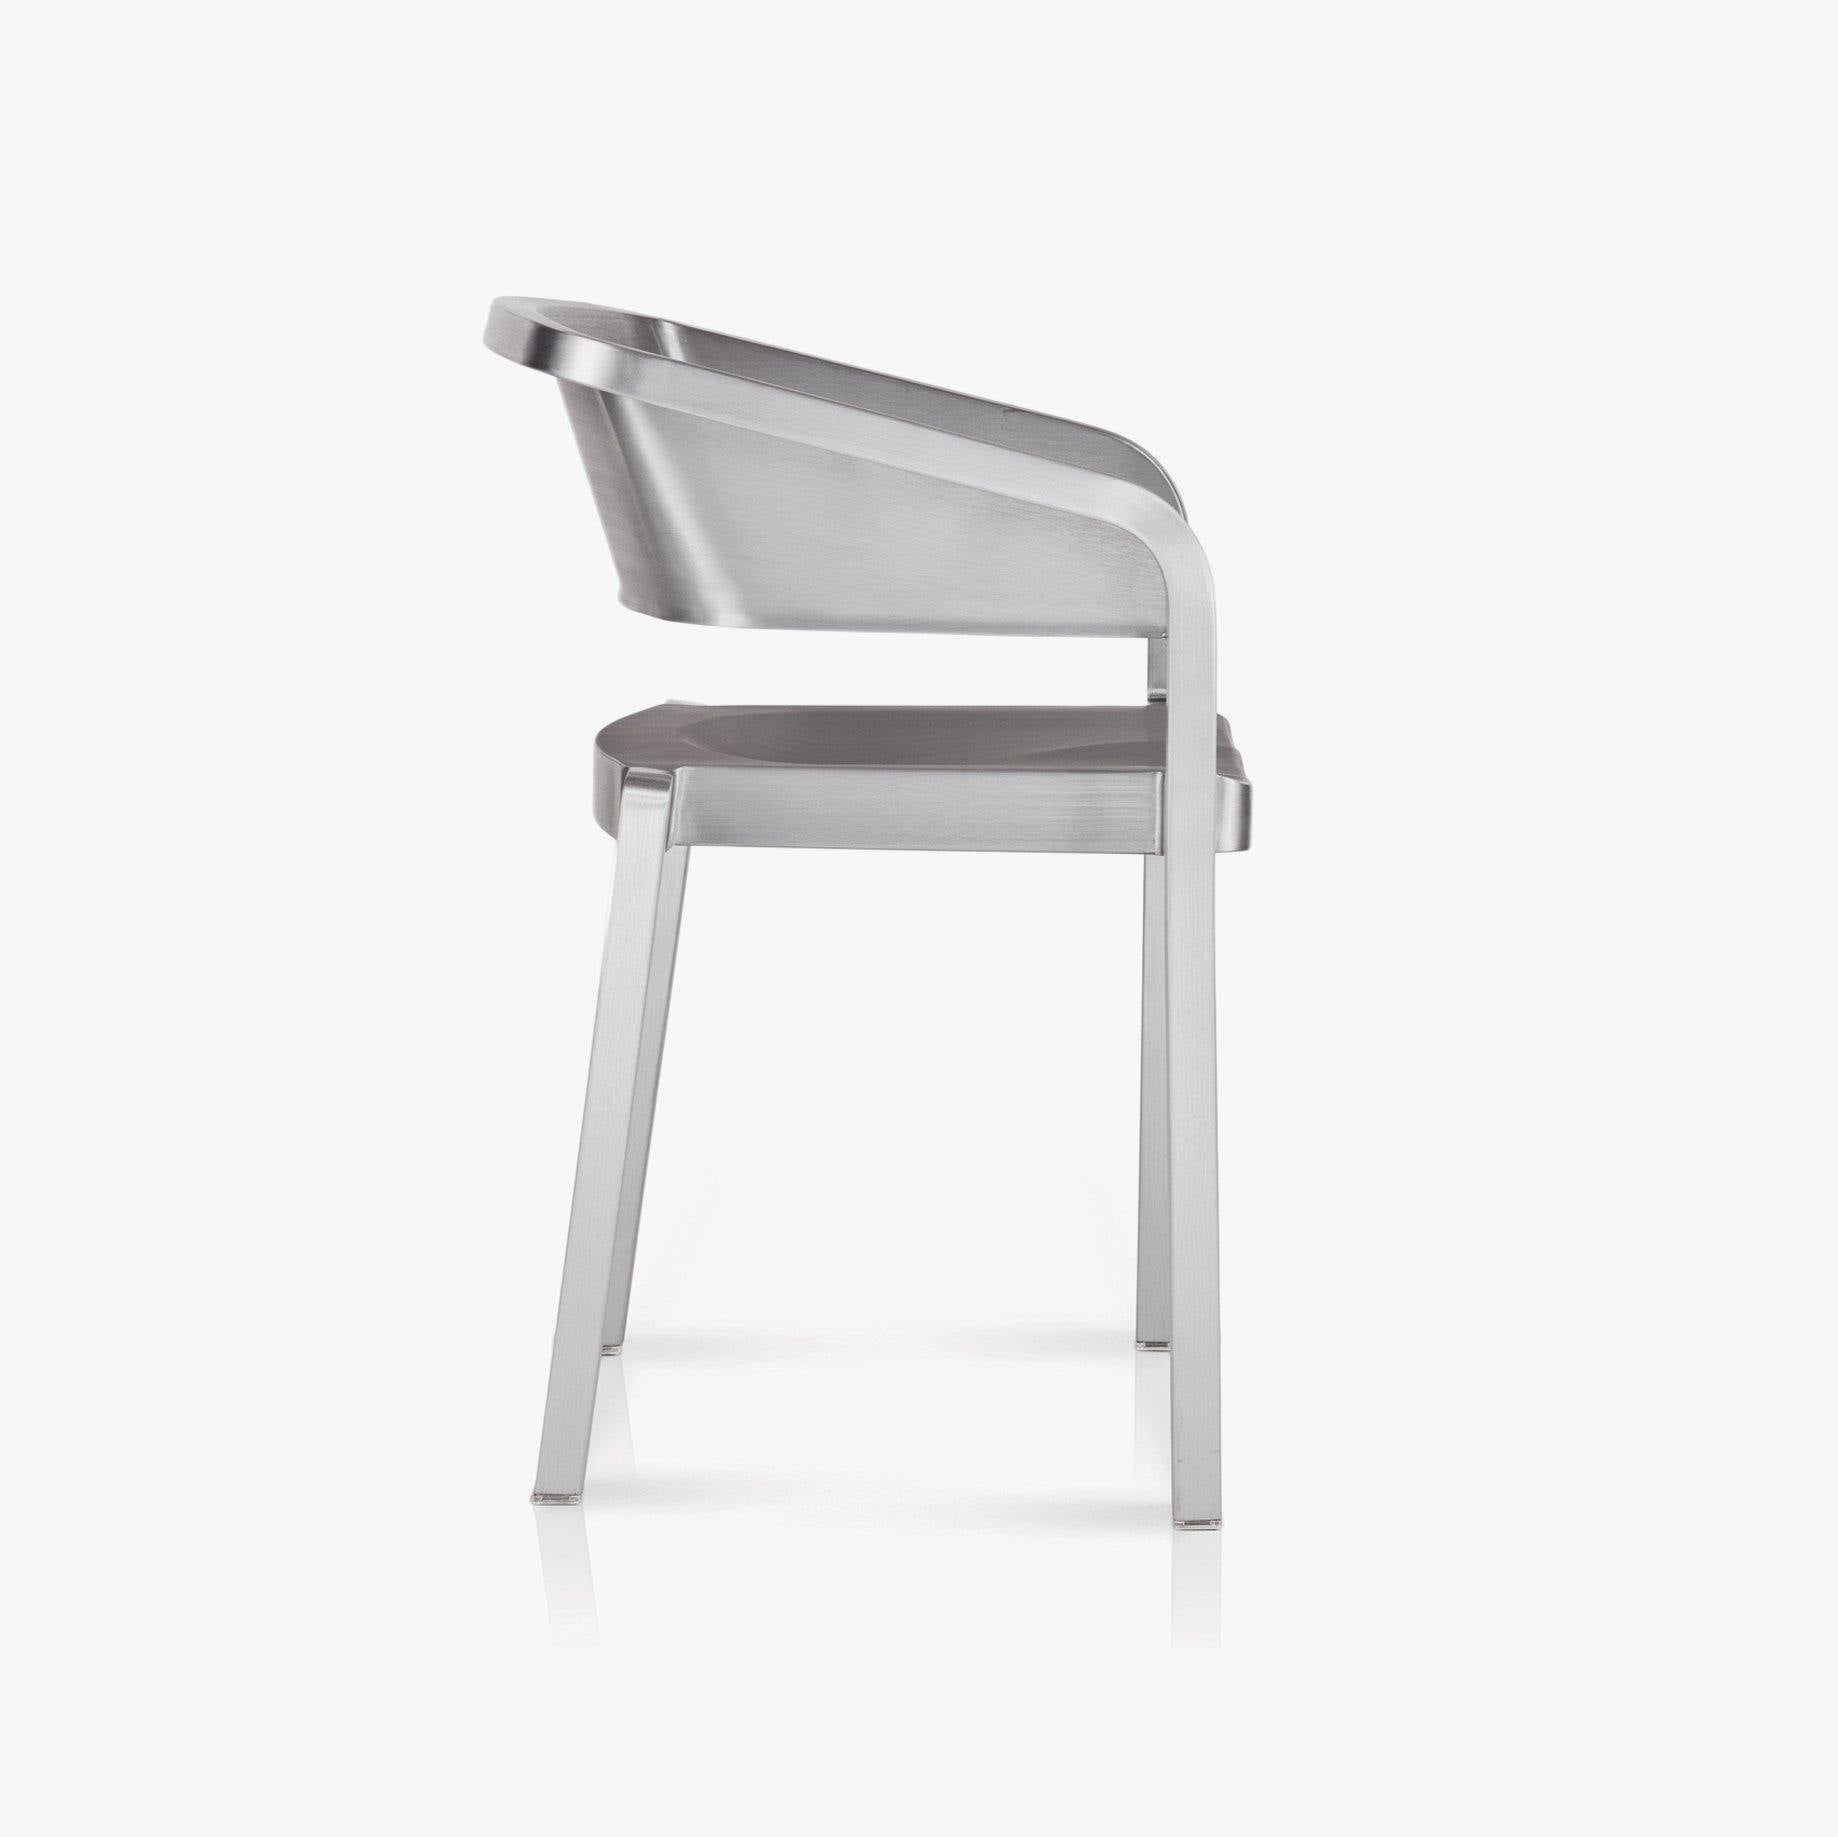 SoSo Chair by Jean Nouvel - Rarify Inc.